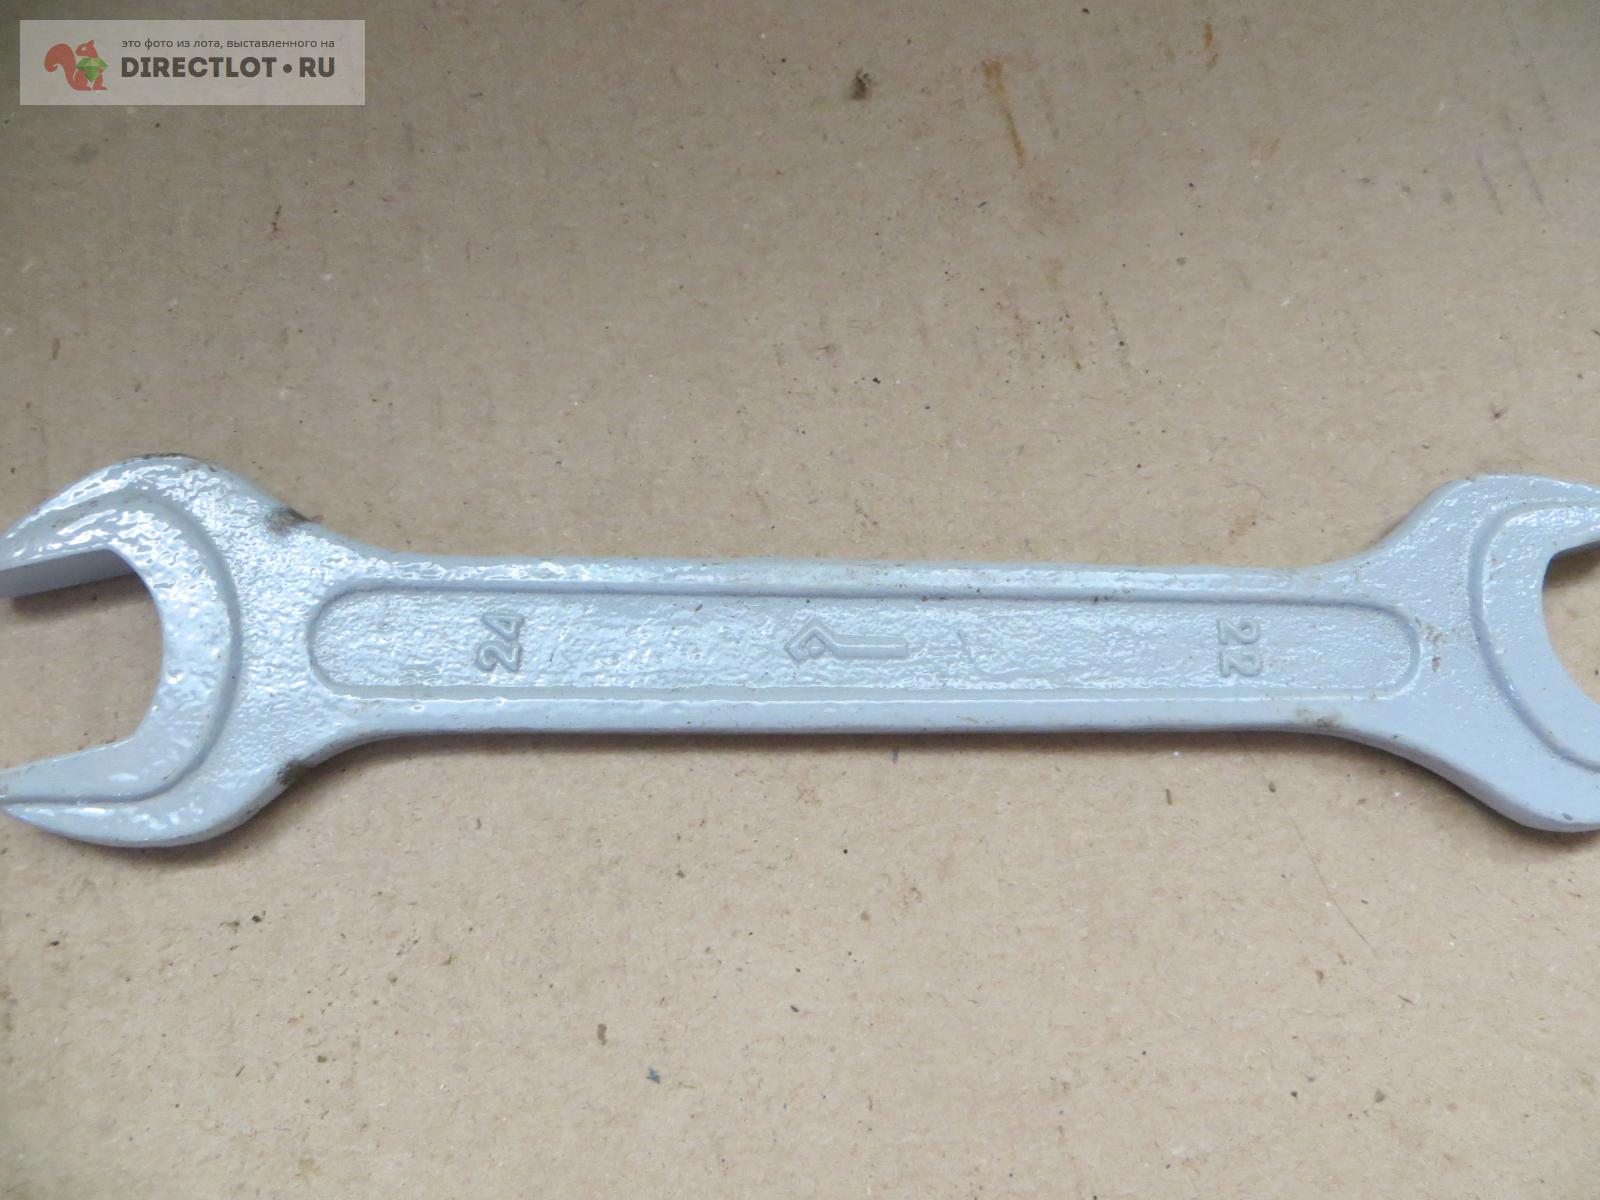 Ключ рожковый 22-24 мм.  в Пензе цена 50,00 Р на DIRECTLOT.RU .